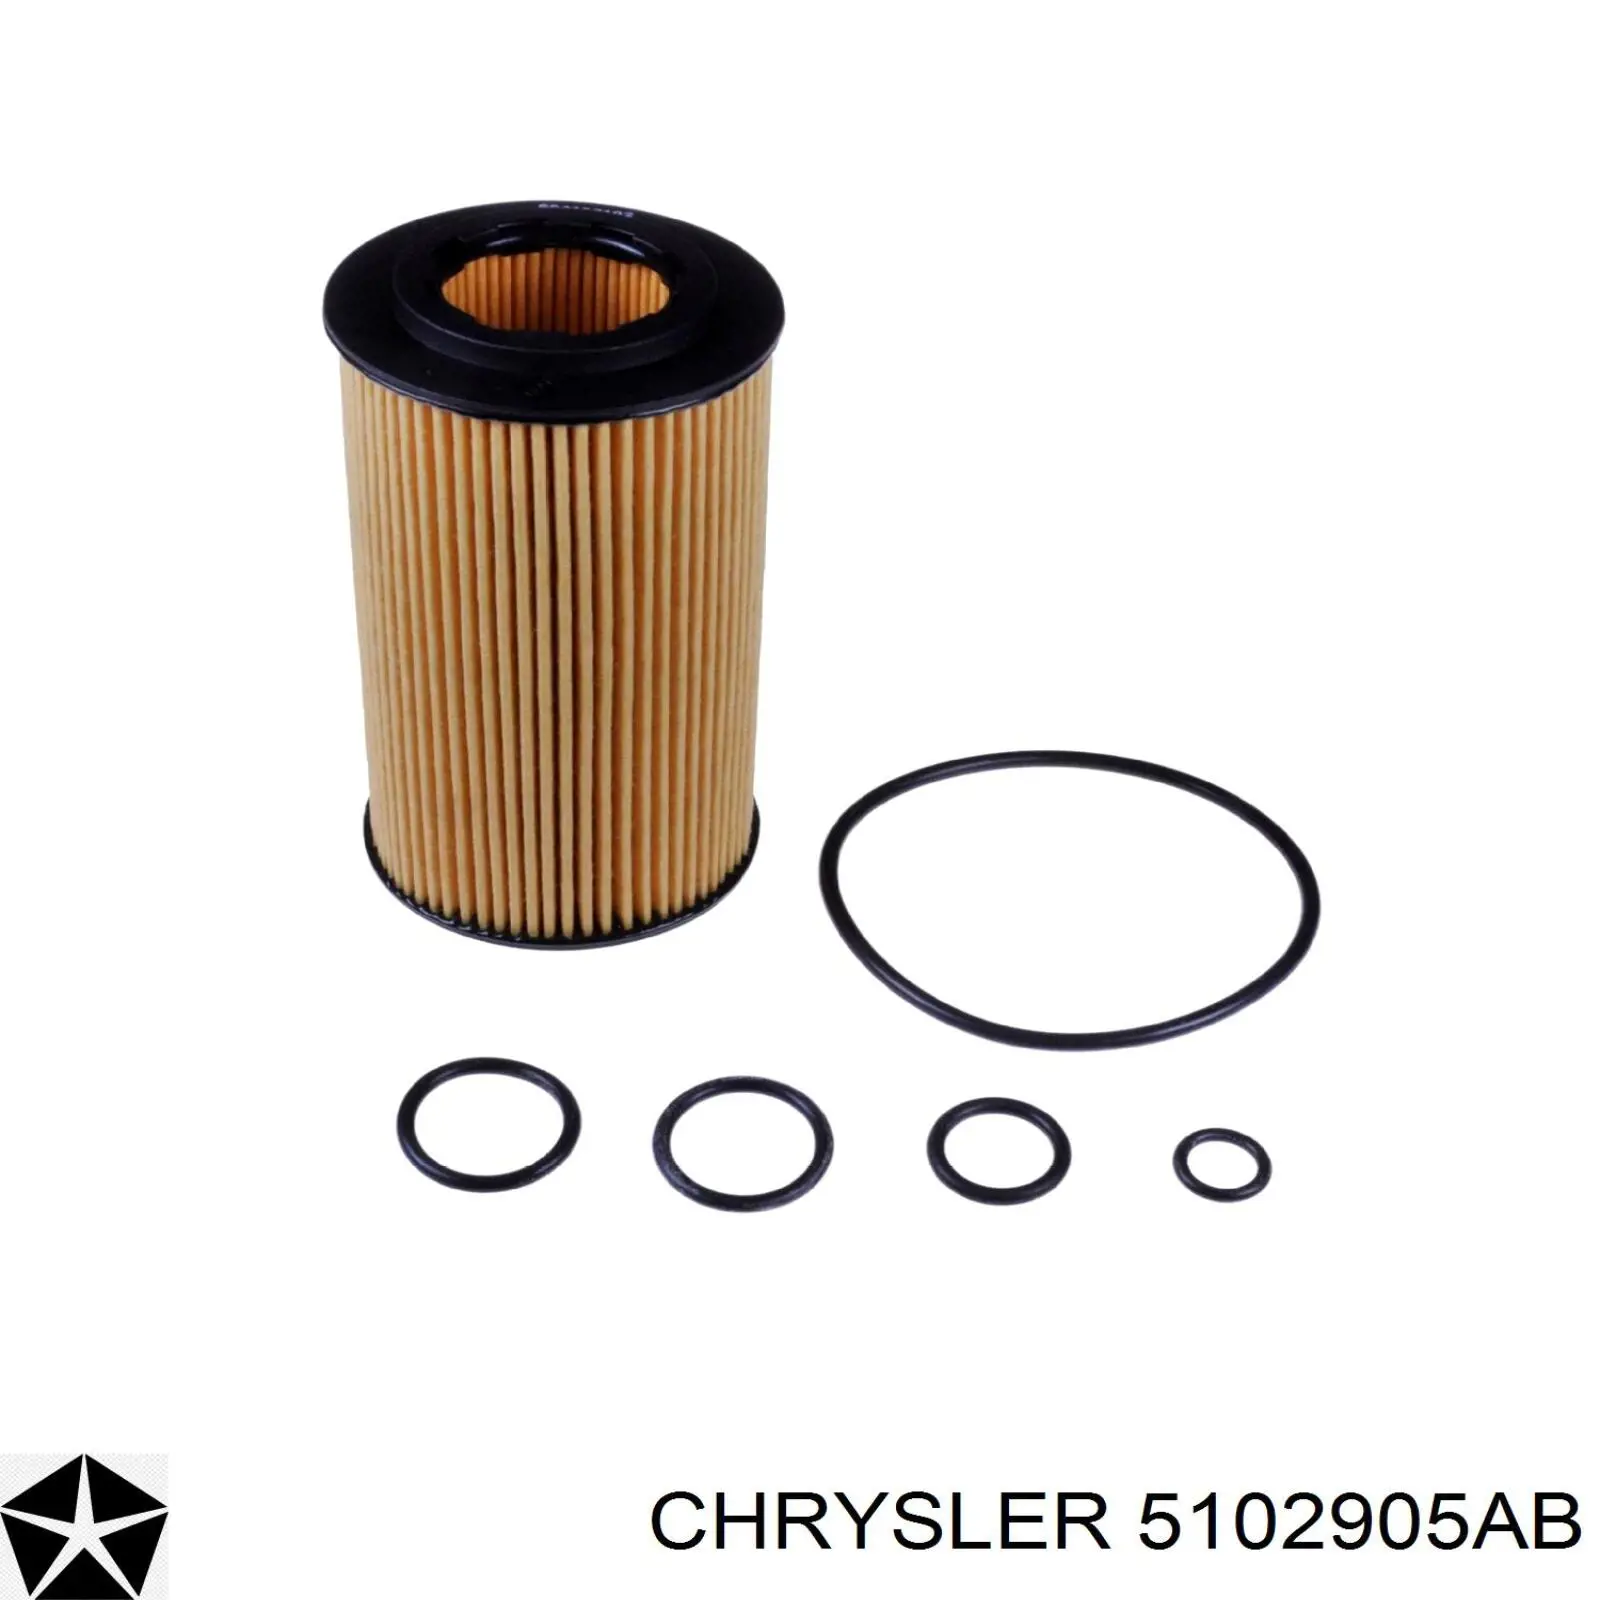 5102905AB Chrysler filtro de aceite